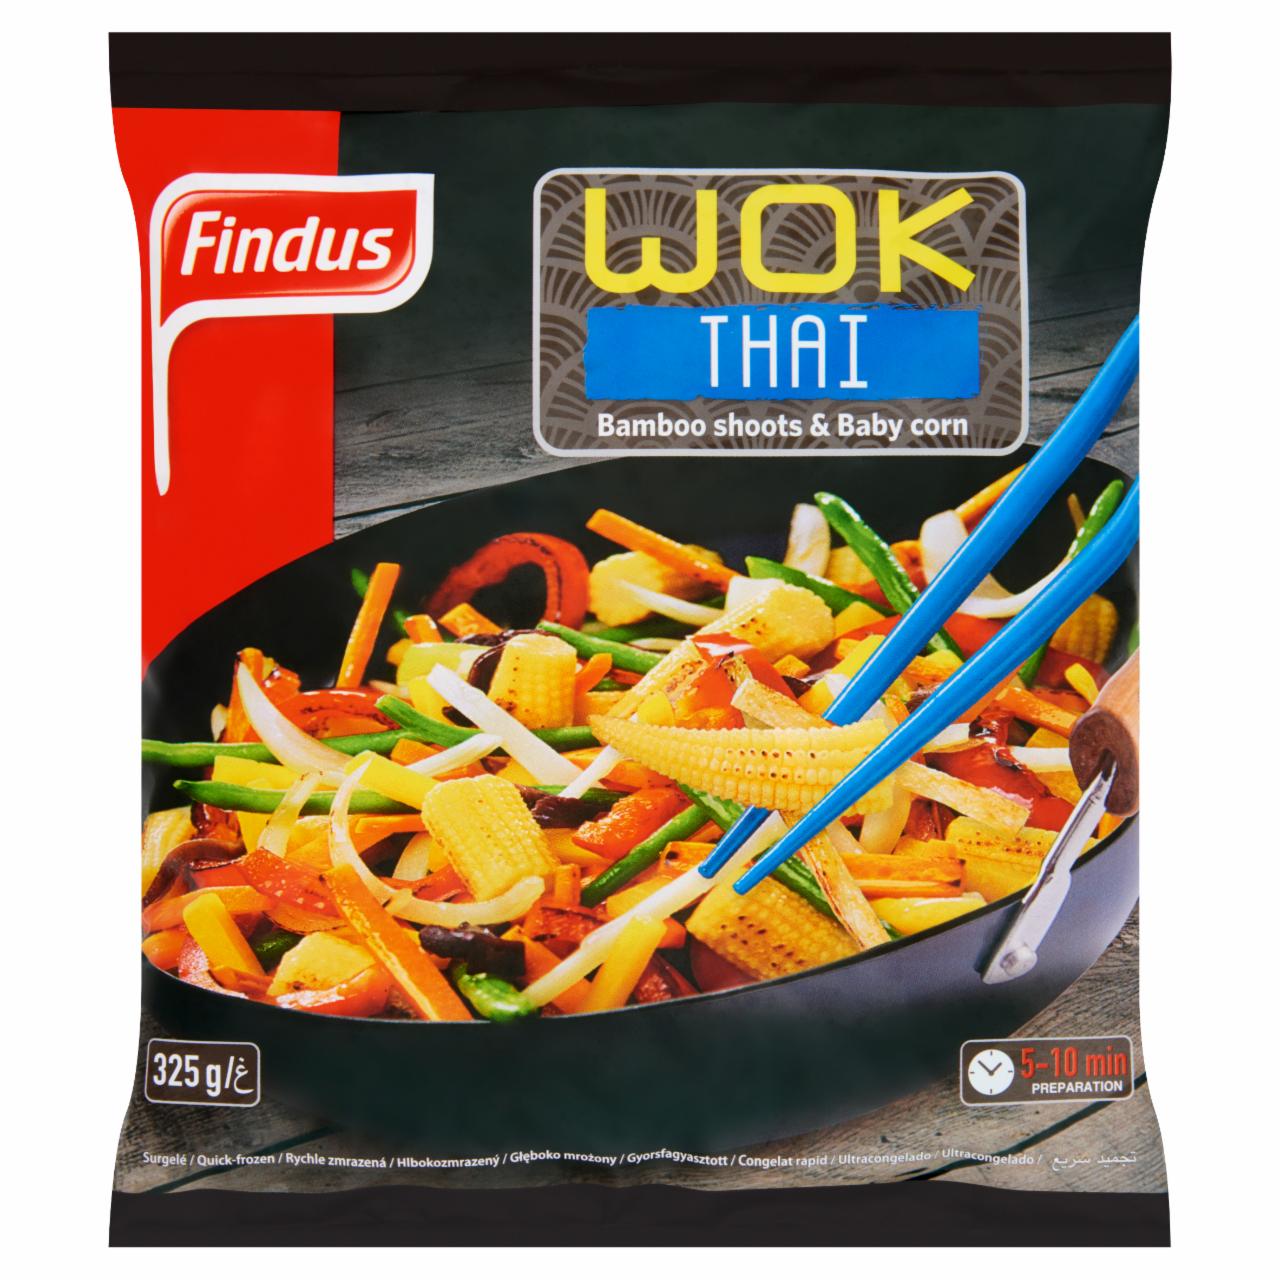 Képek - Findus Wok Thai gyorsfagyasztott enyhén fűszerezett wok zöldségkeverék fafülgombával 325 g